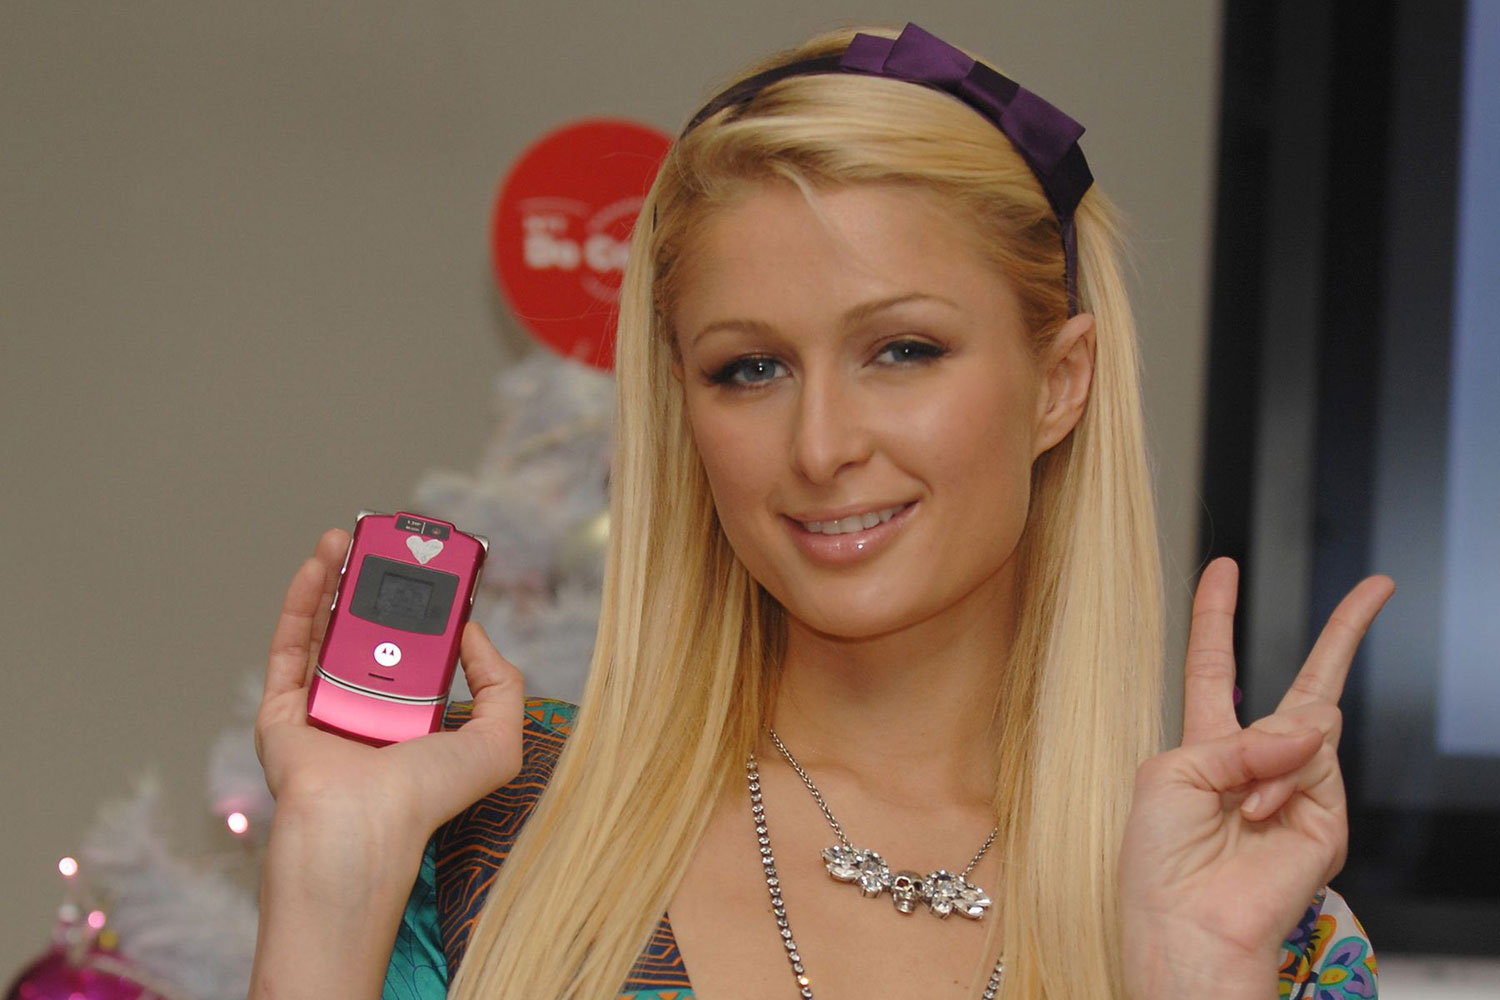 Motorola RAZR V3 Paris Hilton